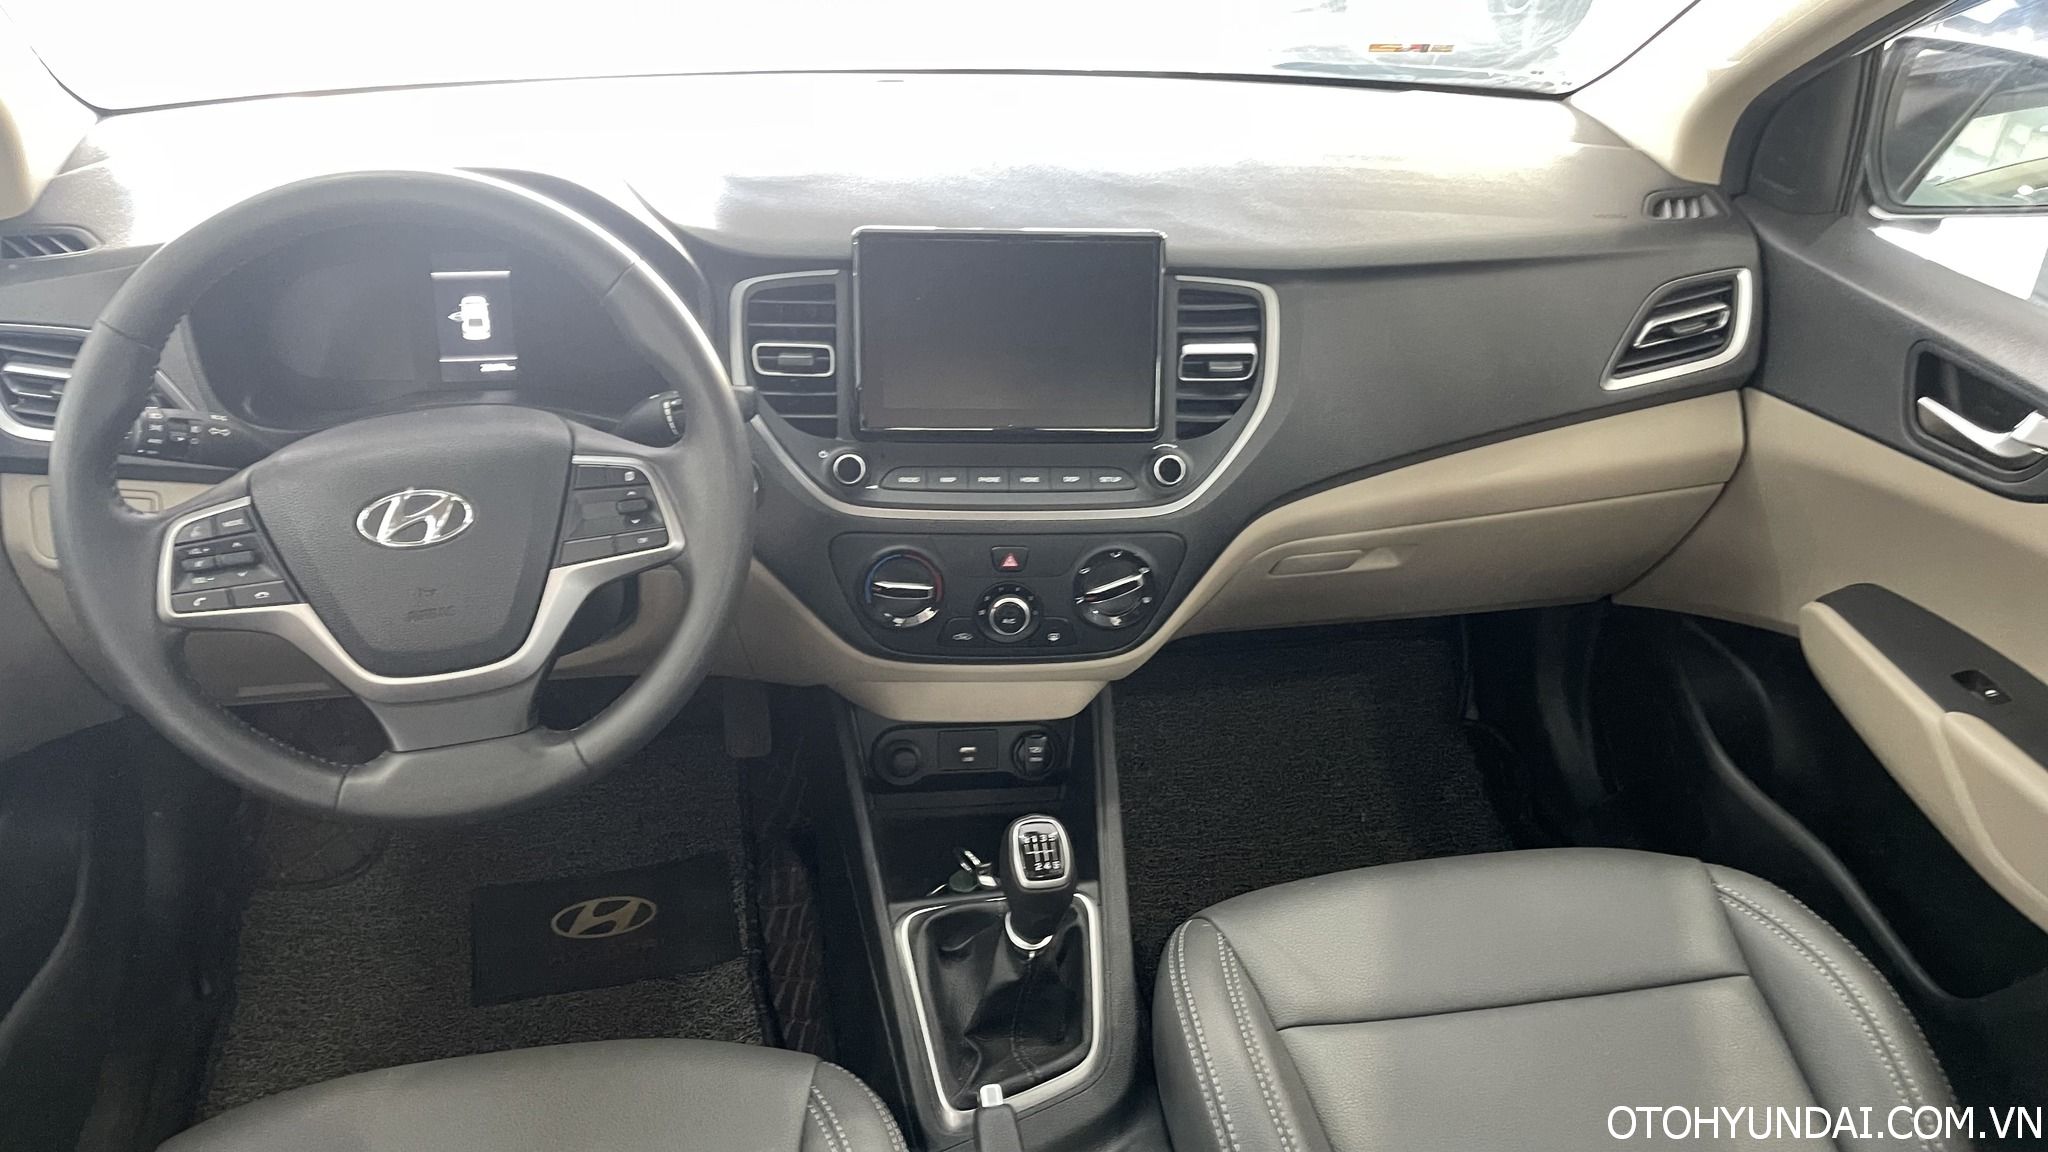 Đổi màu nội thất xe Hyundai Accent: Kinh nghiệm, bảng giá 2022